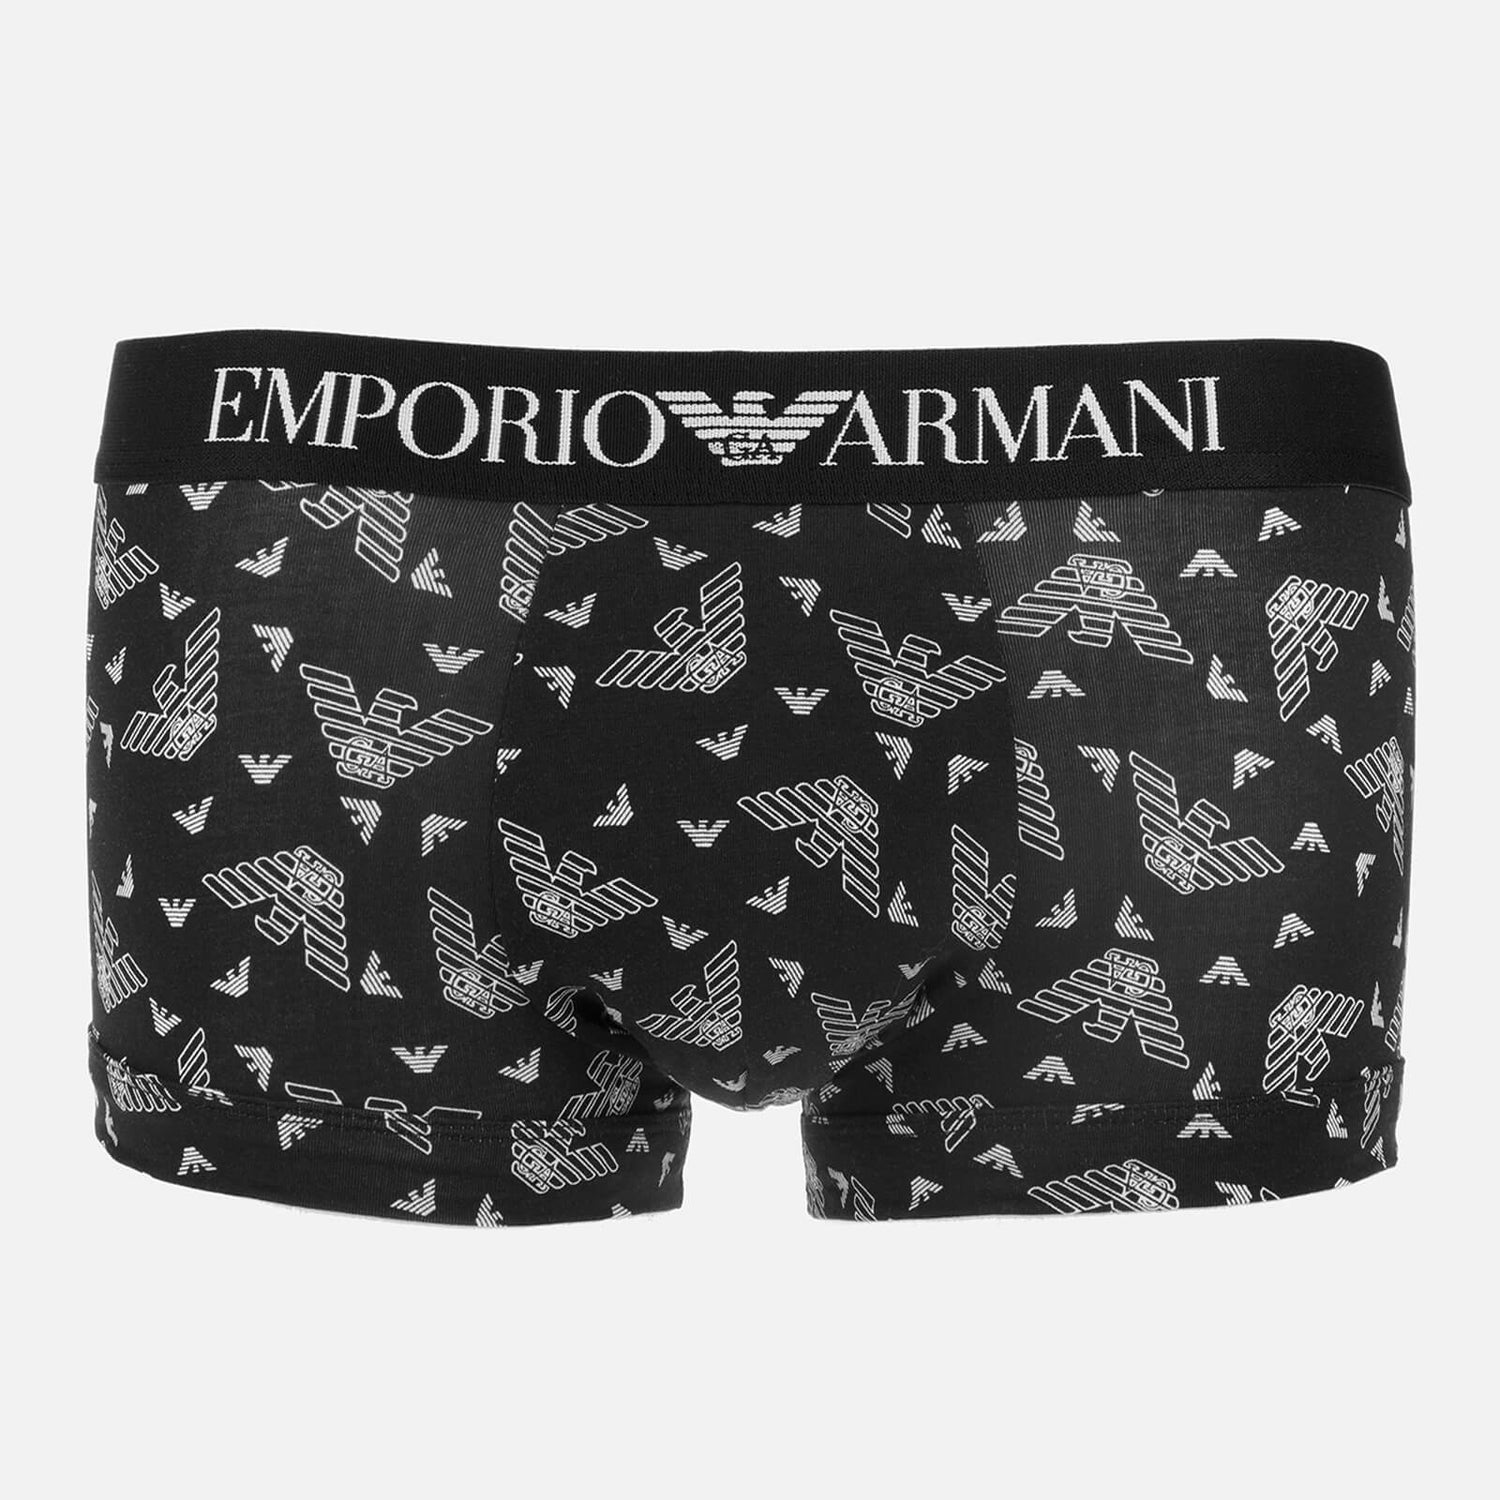 Emporio Armani Underwear Men's All Over Eagle Print Boxer Shorts - Black/White - S